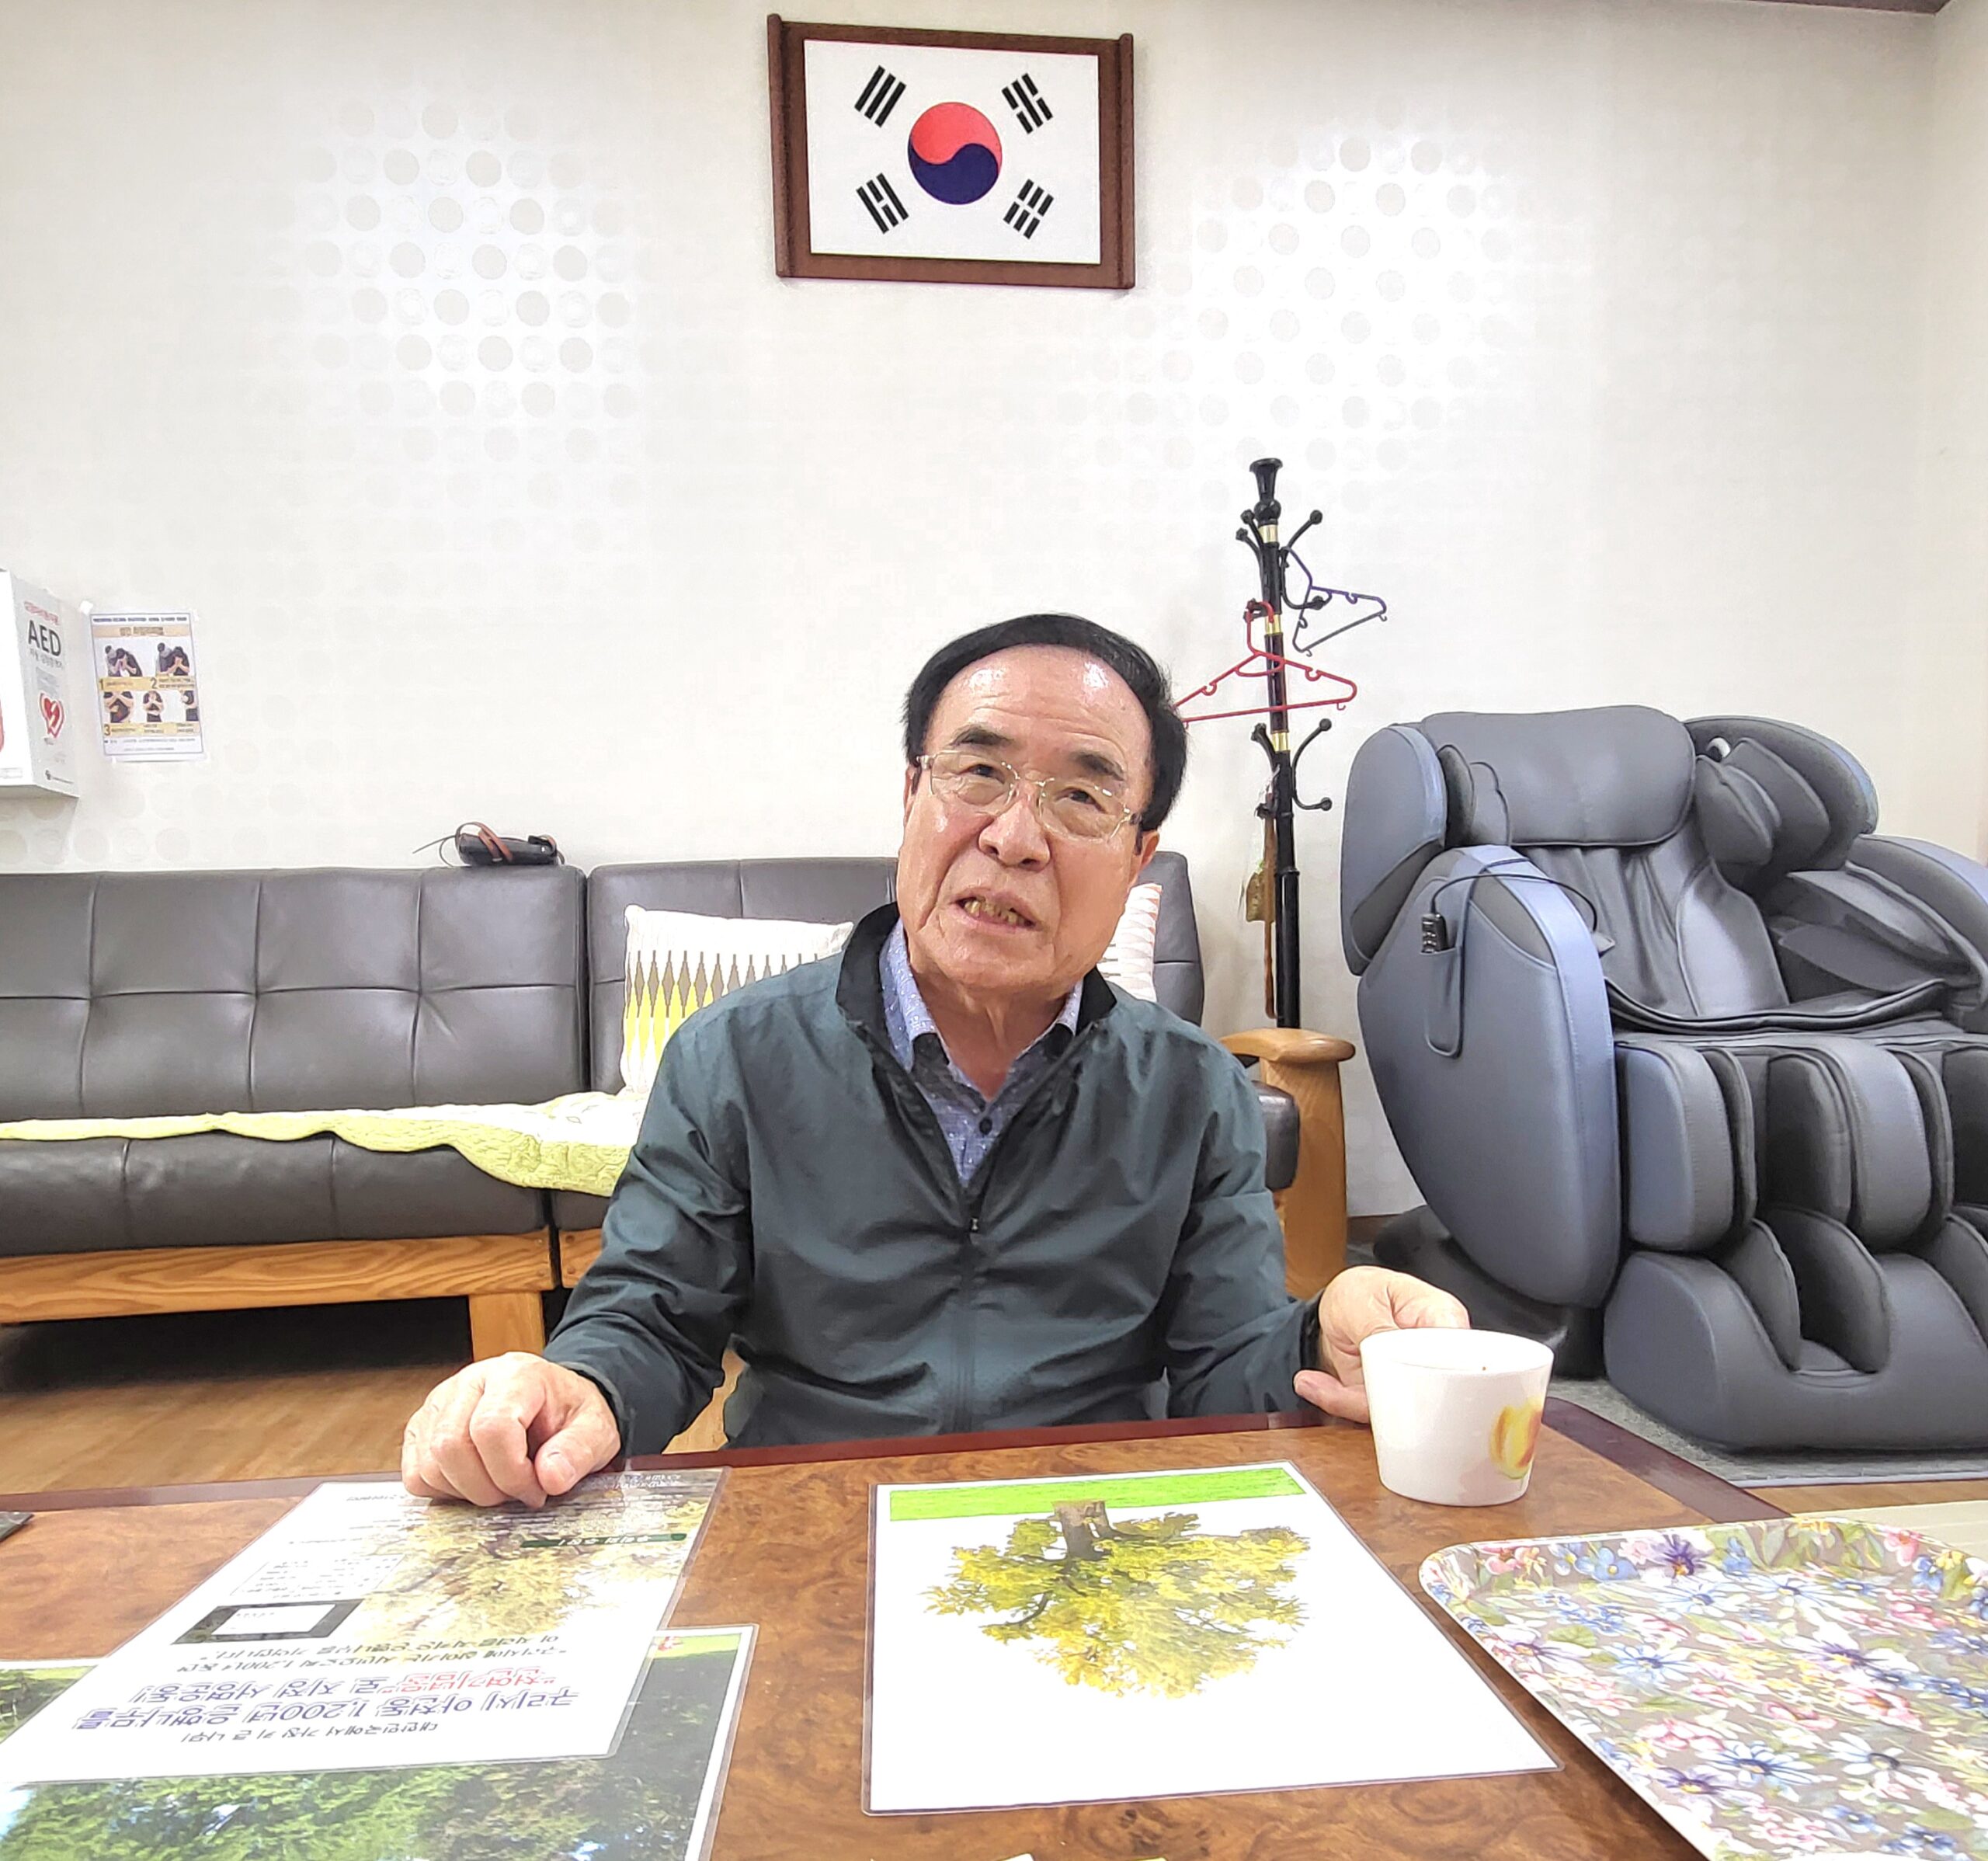 구리시 아치울마을, 김용현 노인회장 1200년 은행나무 관련 인터뷰